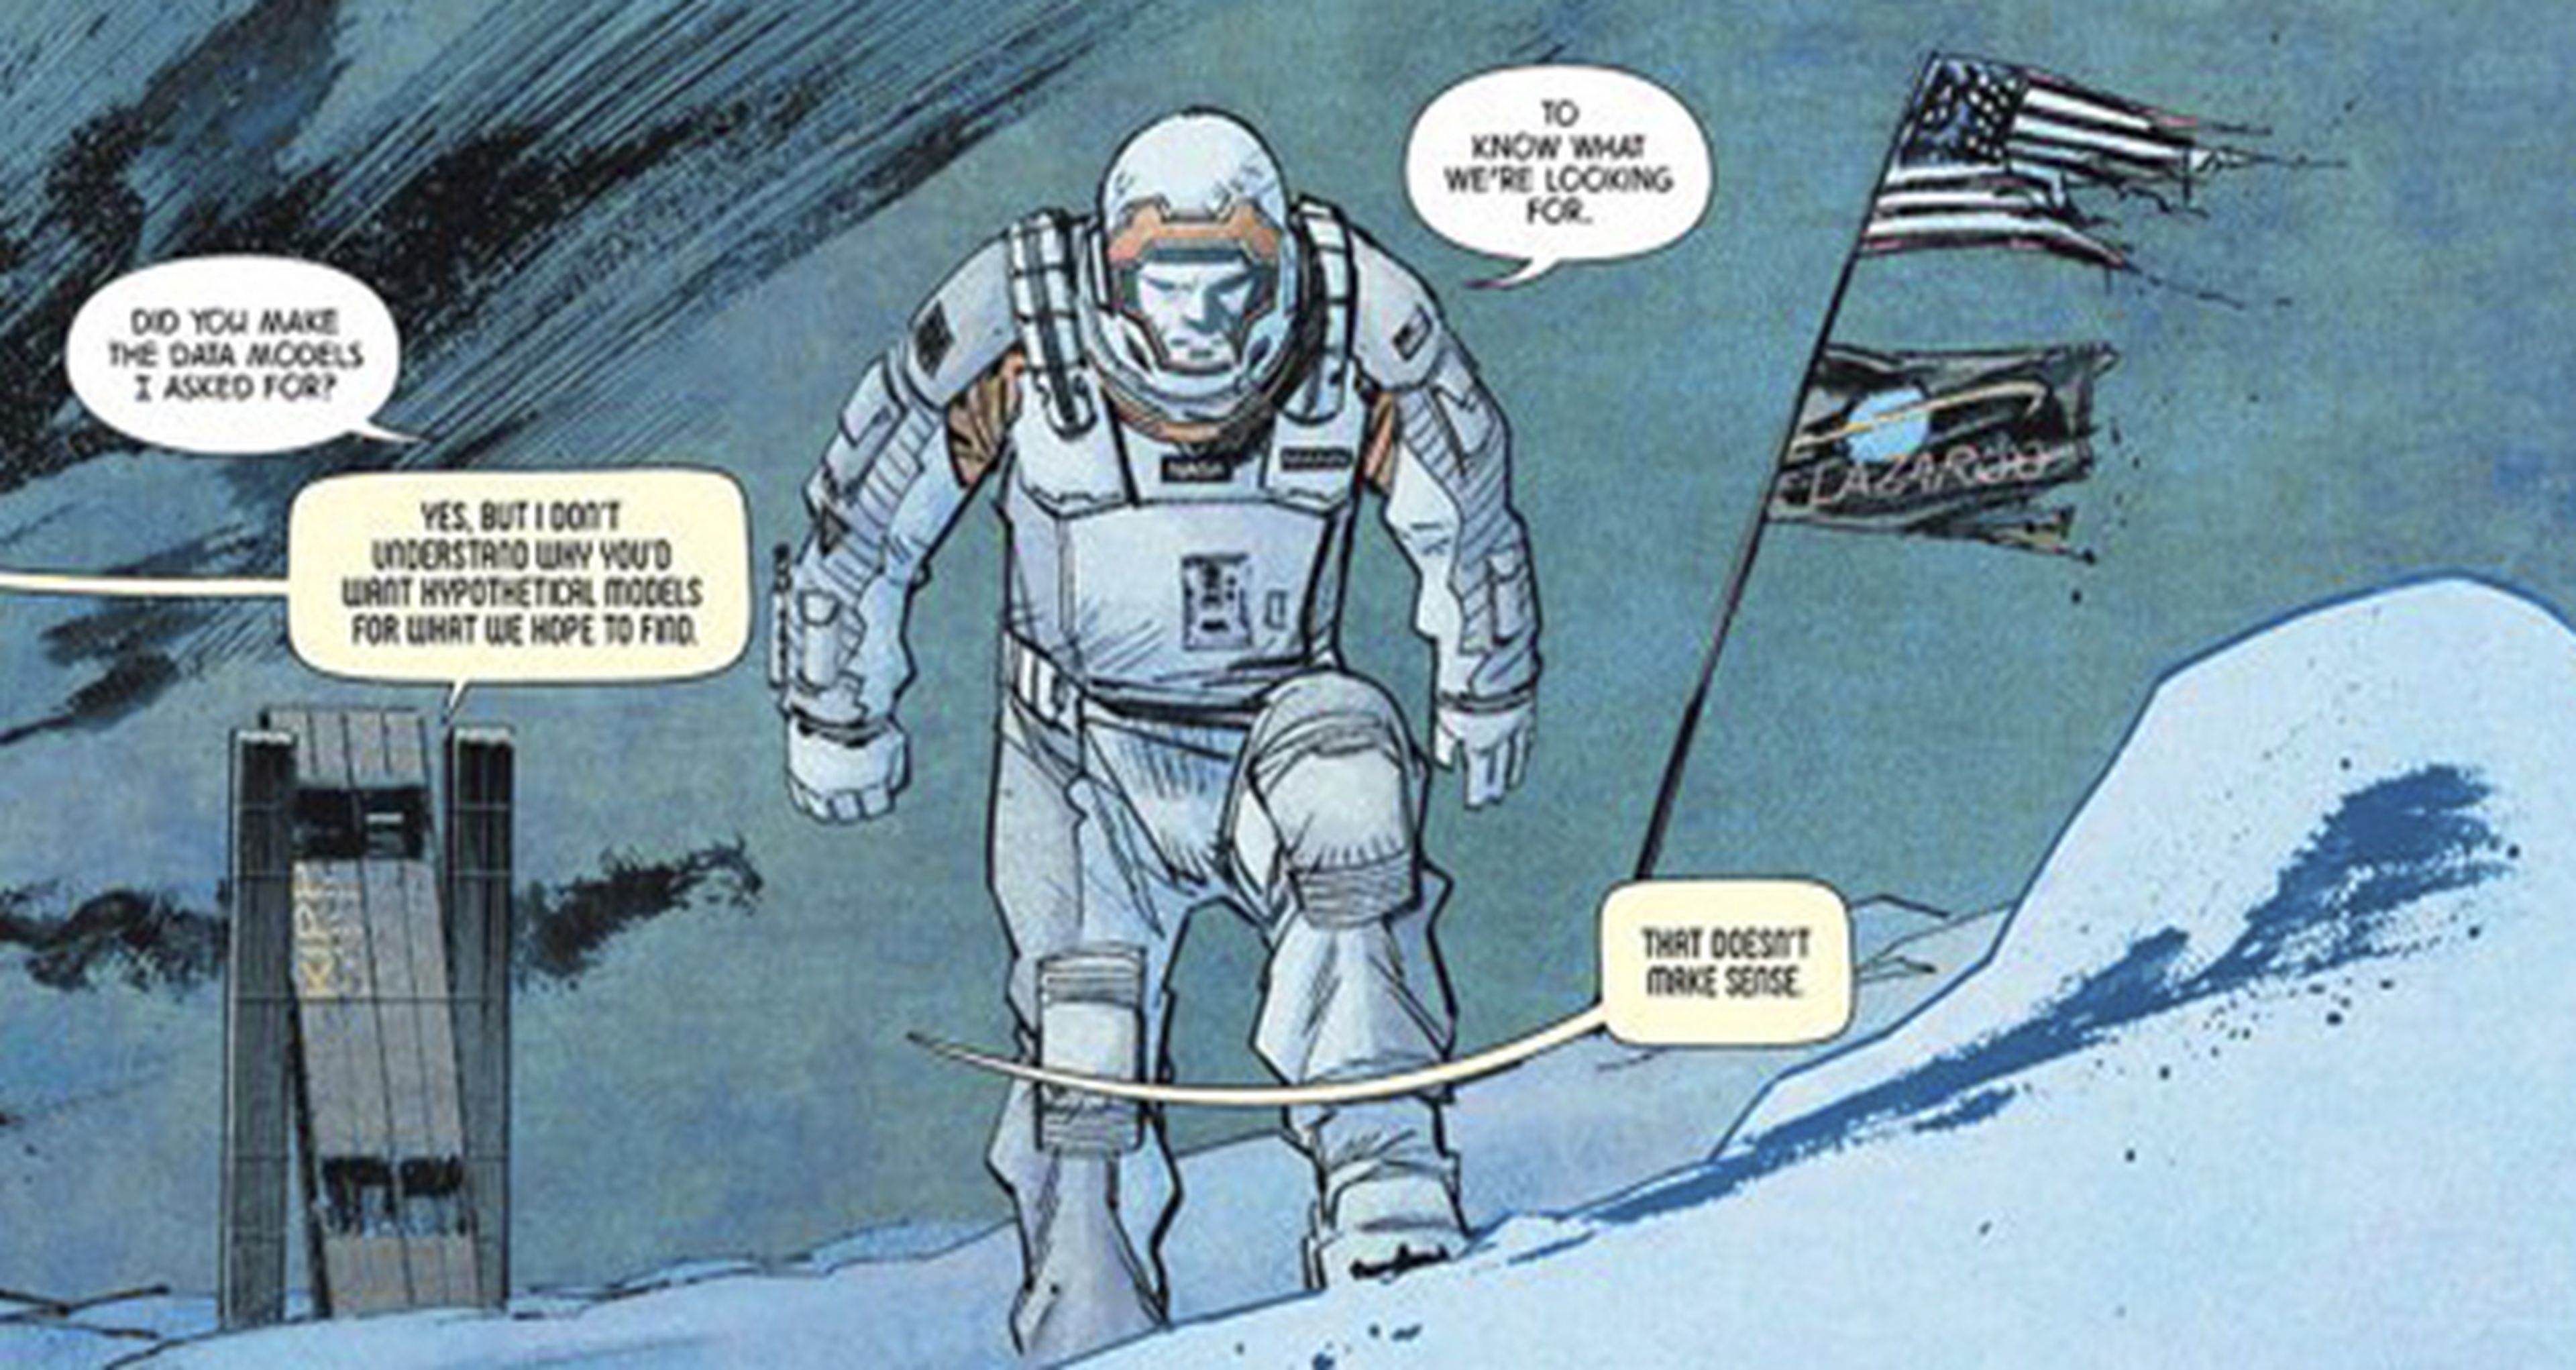 Publicado el cómic de Nolan, Absolute Zero, que profundiza en Interstellar